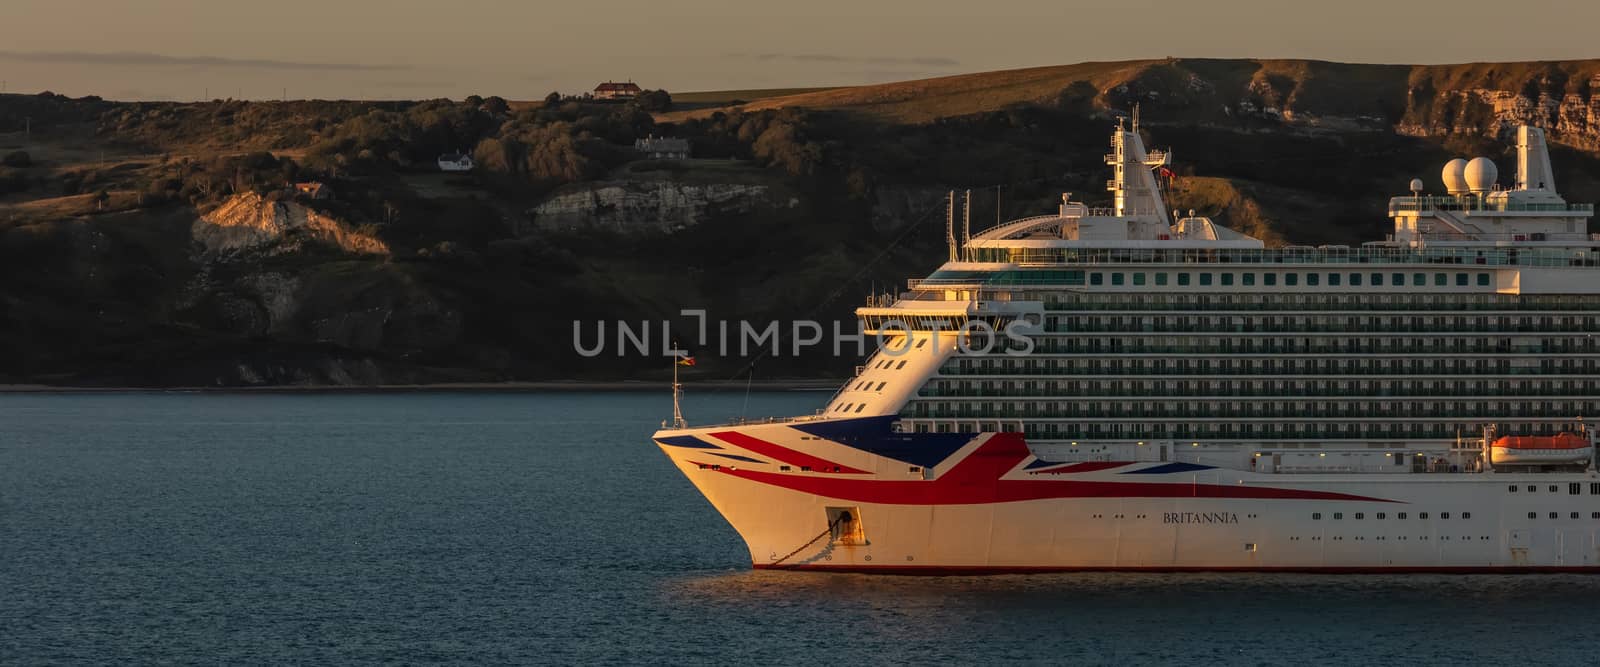 P&O cruise ship Britannia in Weymouth Bay. by DamantisZ